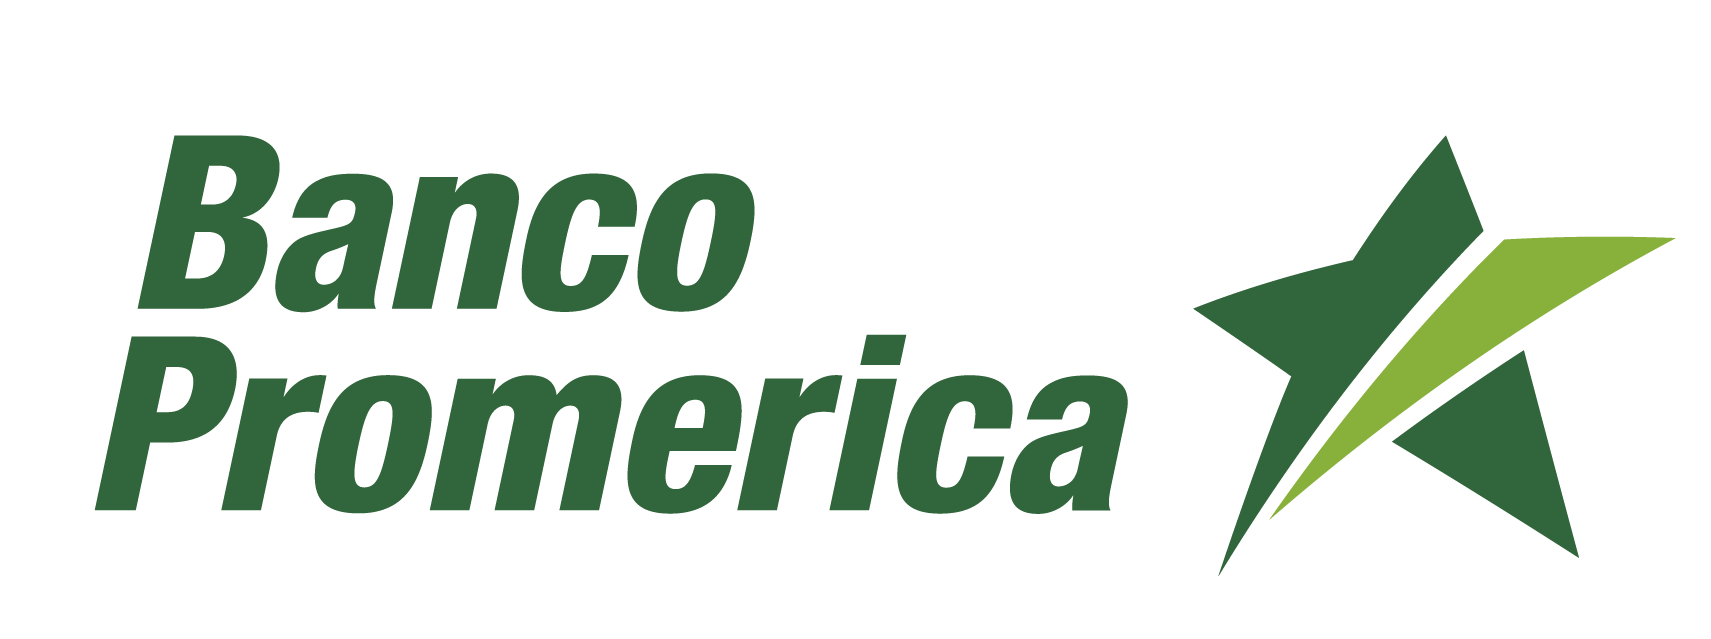 Promerica_ACFTechnologies_español_gestion_de_colas_2021_logo